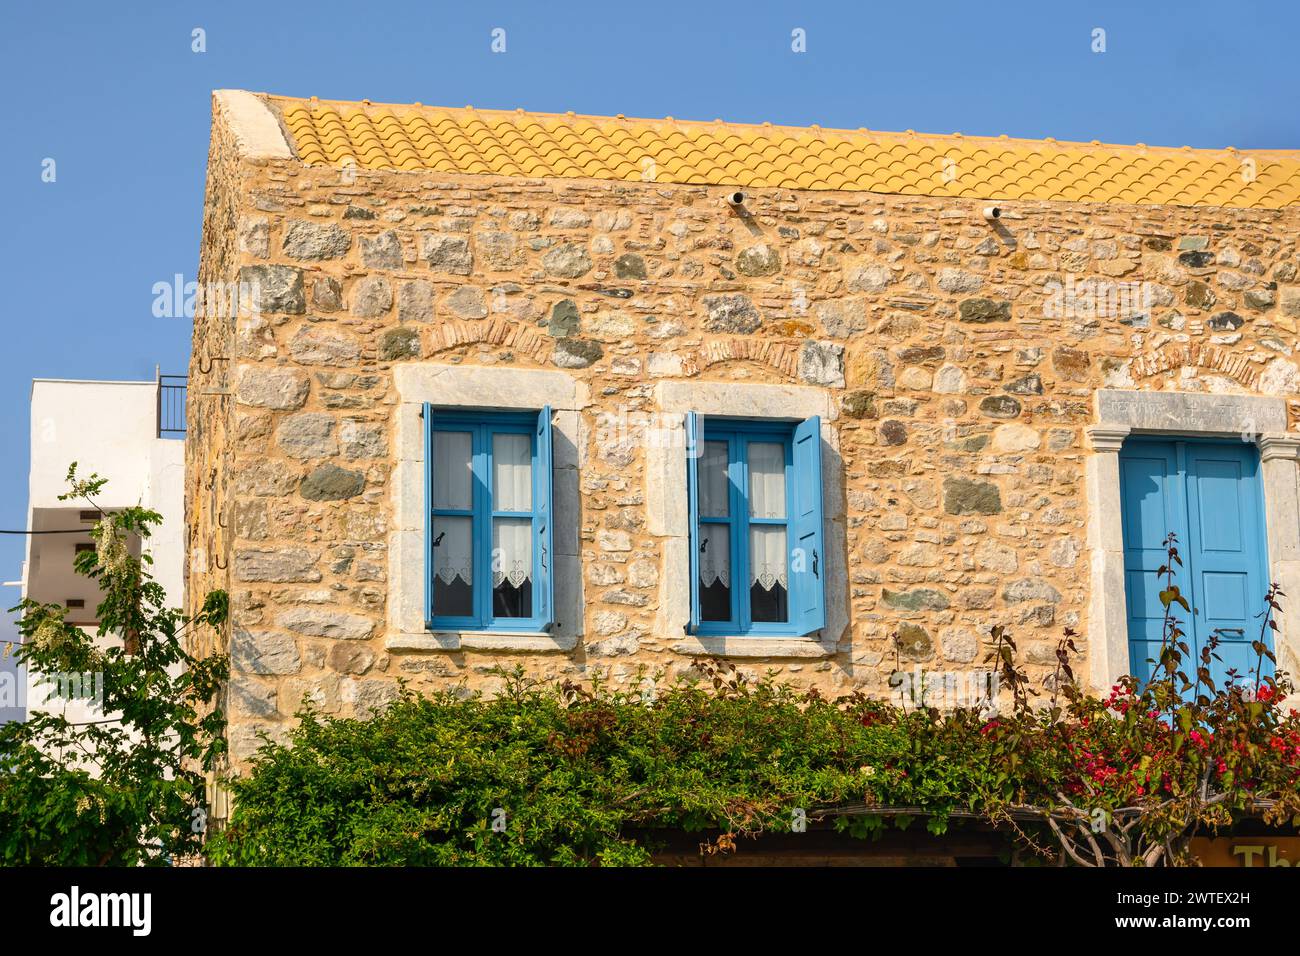 Architecture of Kardamena town on the island of Kos, Greece Stock Photo